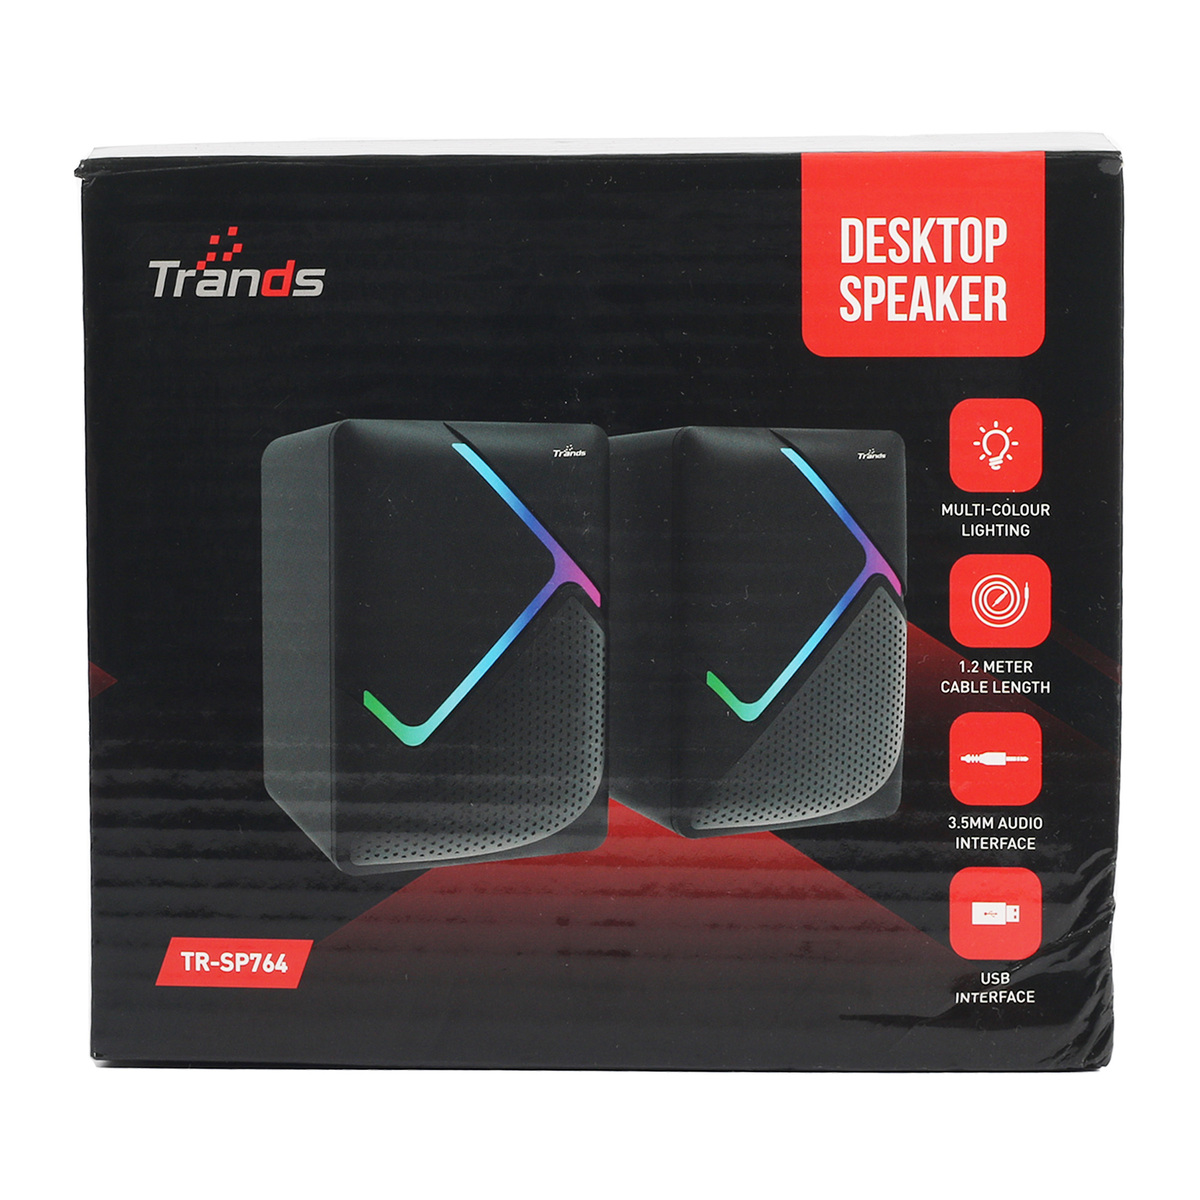 Trands Desktop Speaker TR-SP764